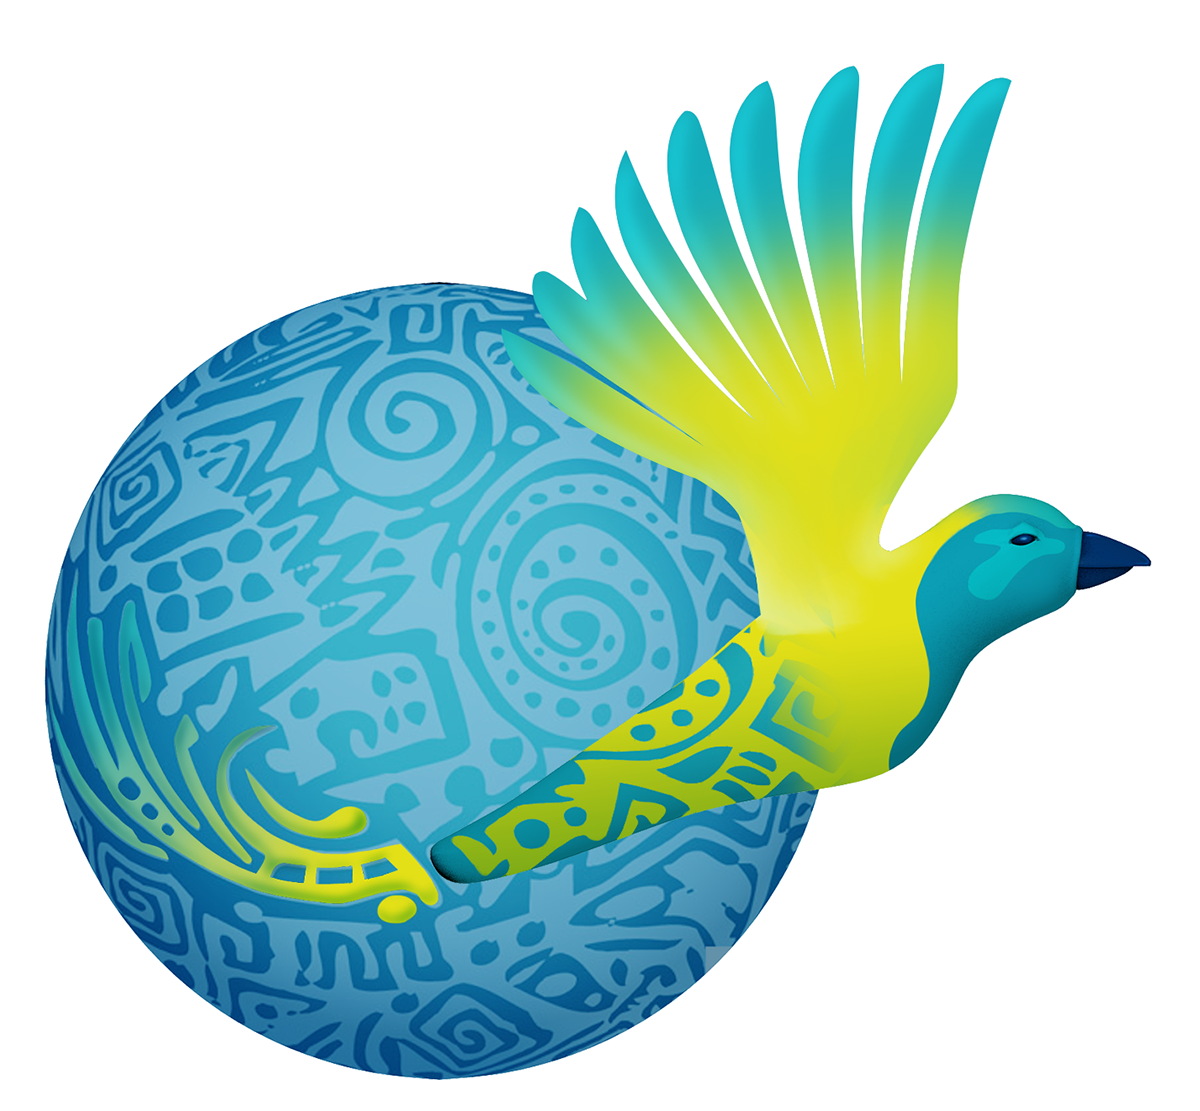 3D logo bird blue yellow